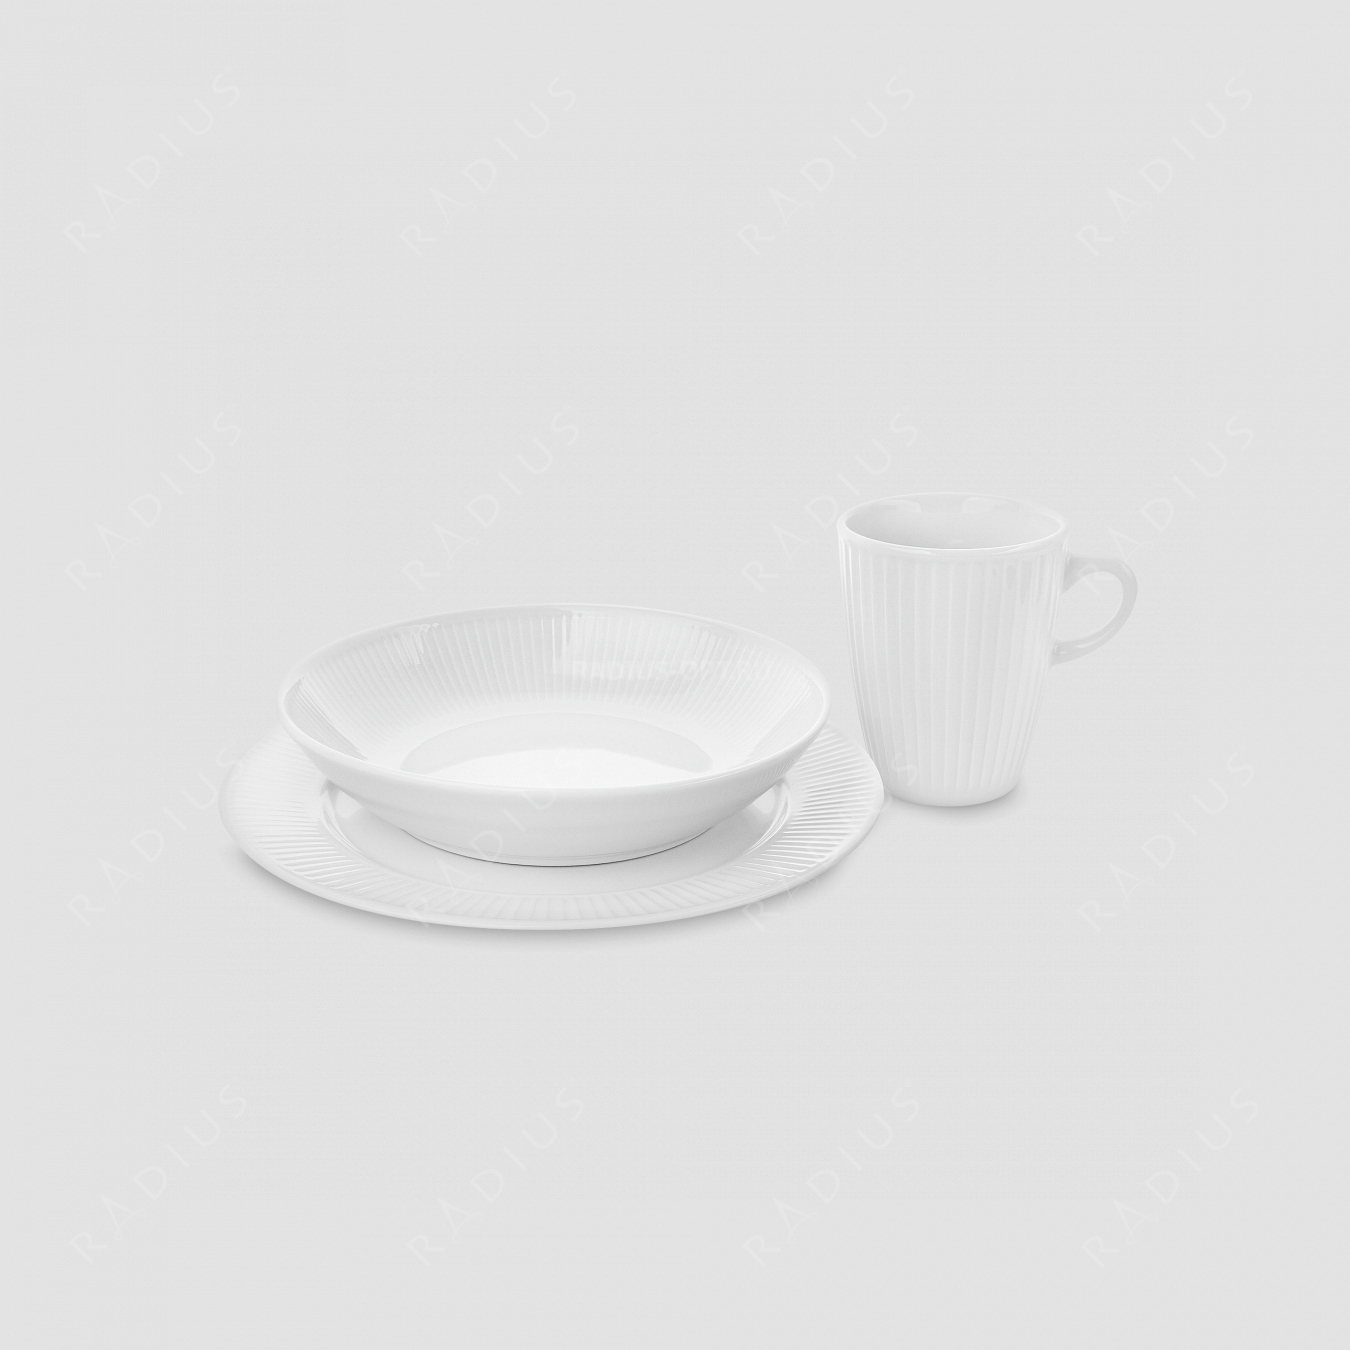 Набор обеденный на 4 персоны, 12 предметов, материал: фарфор, цвет: белый, серия Plisse, PILLIVUYT, Франция